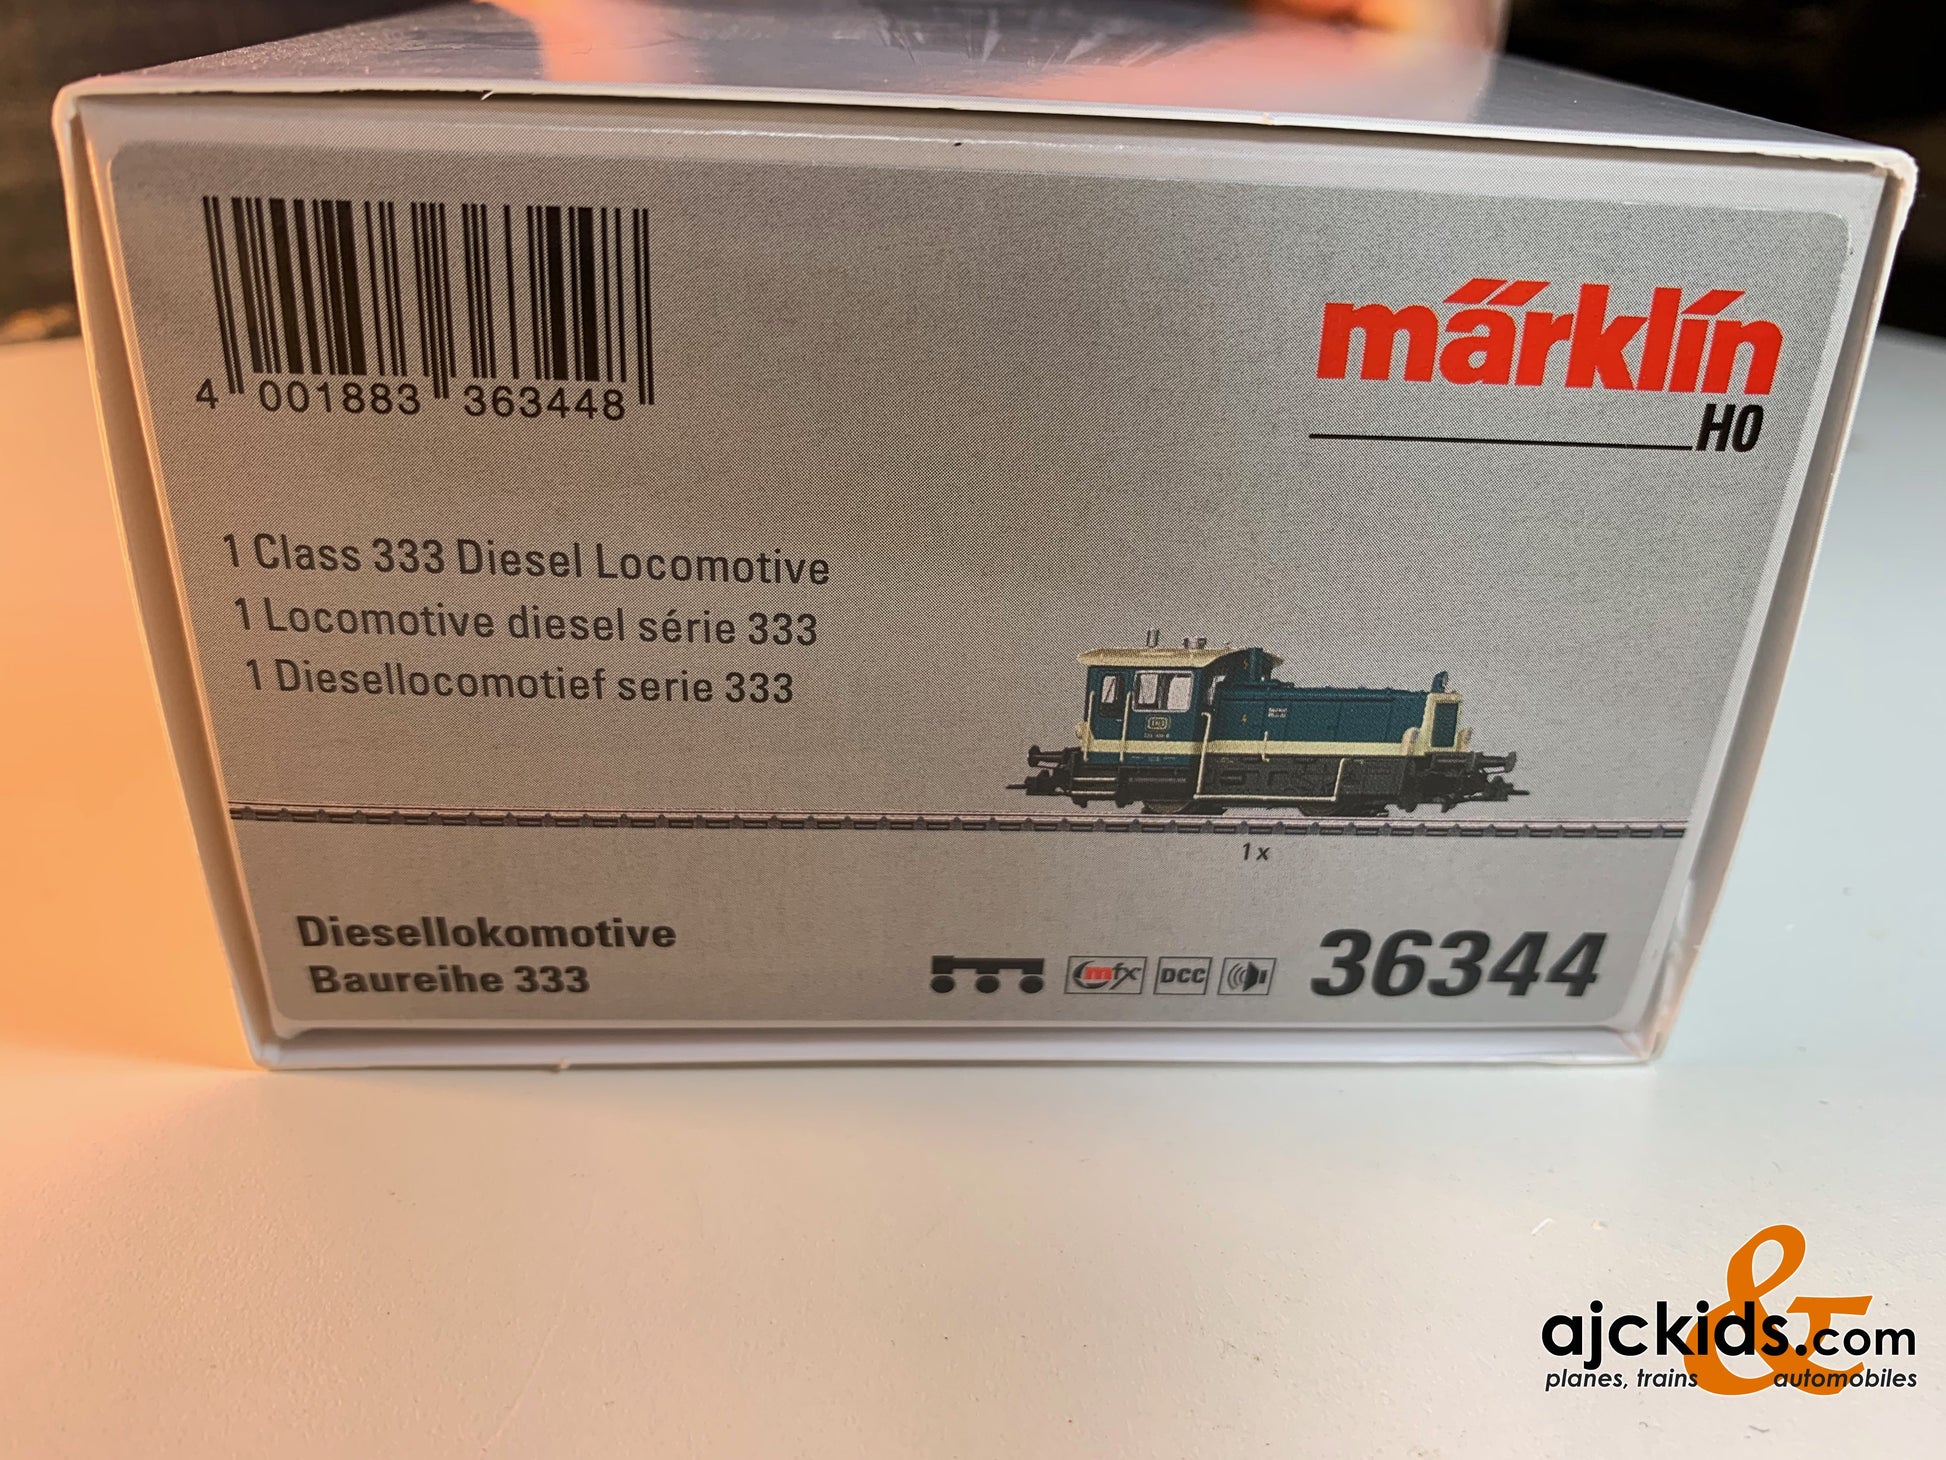 Marklin 36344 - Class 333 Diesel Locomotive at Ajckids.com